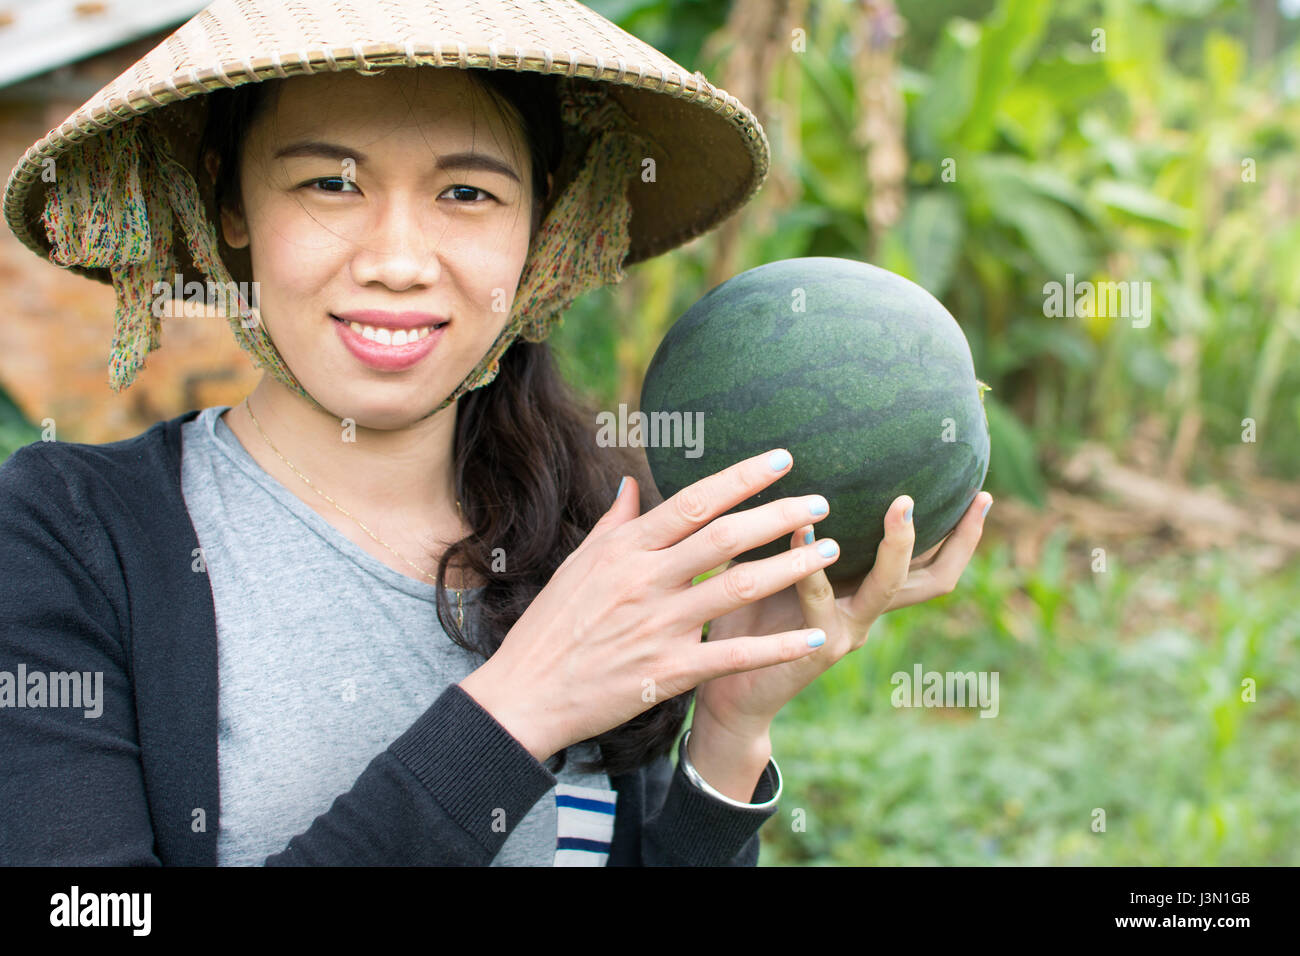 Female farmer holding fresh watermelon dans le domaine Banque D'Images